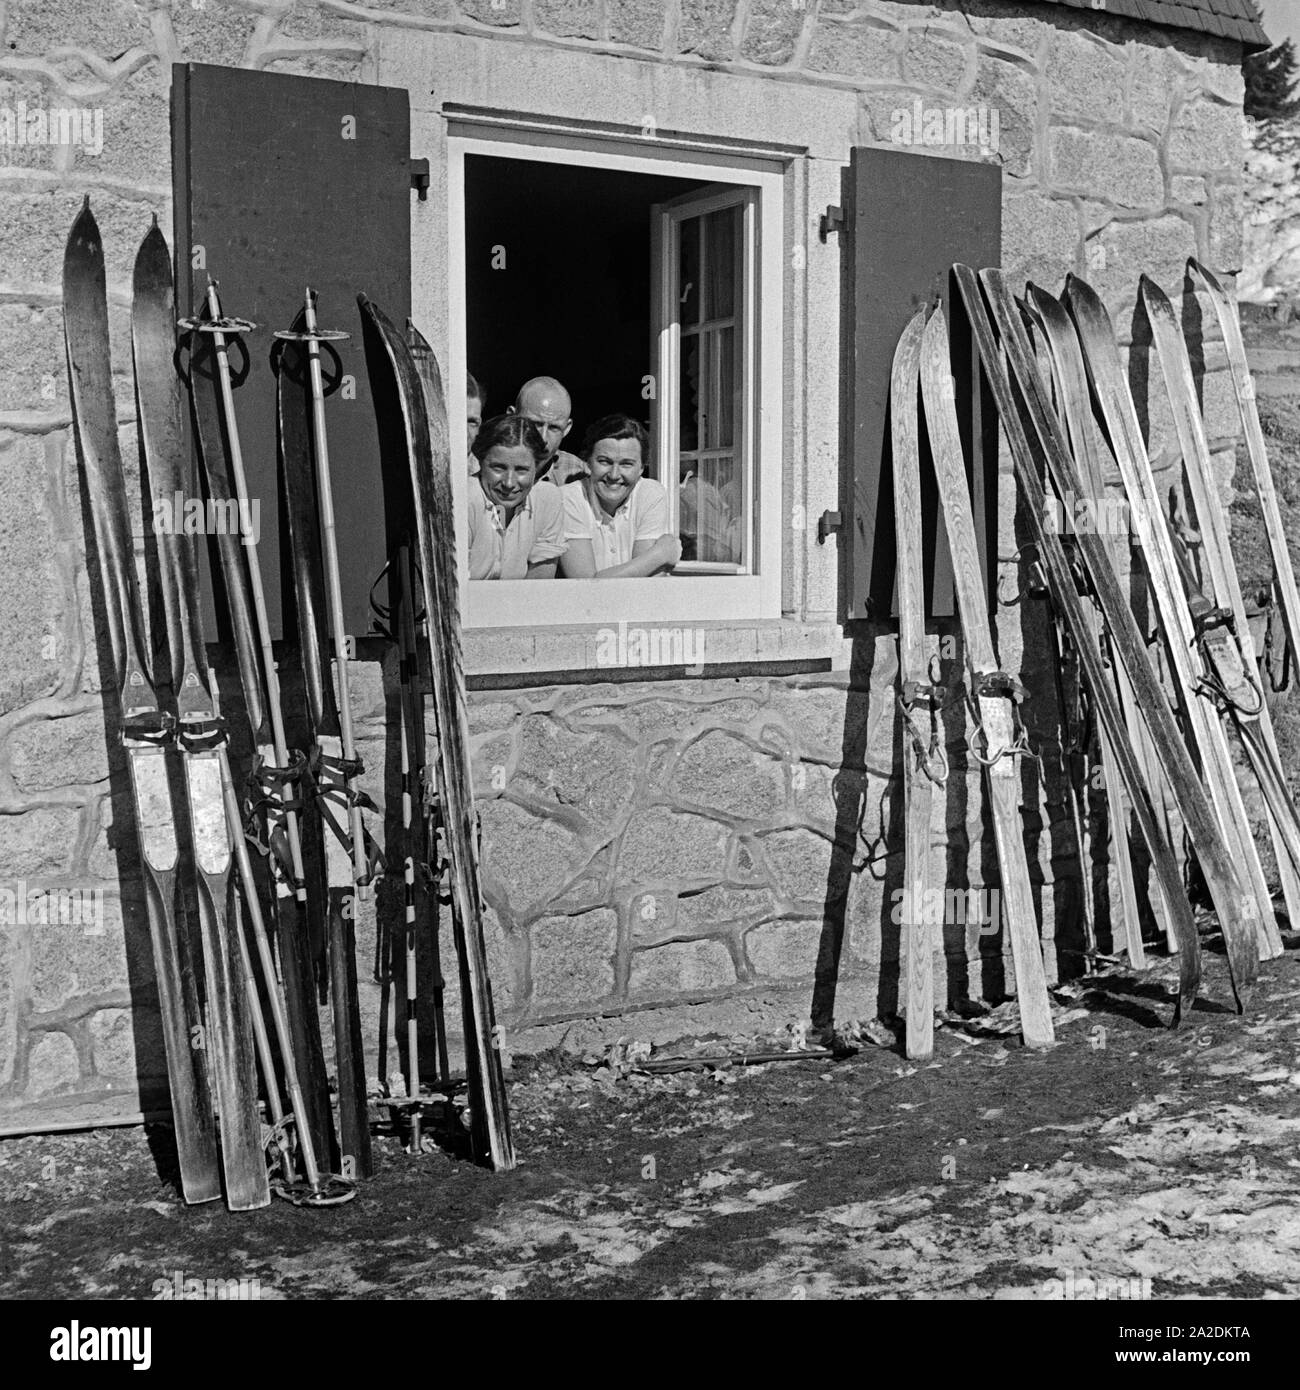 Skifahrer lachen aus dem Fenster einer Skihütte, Deutschland 1930er Jahre. Gli sciatori sorridente al di fuori della finestra di un rifugio sciistico, Germania 1930s. Foto Stock